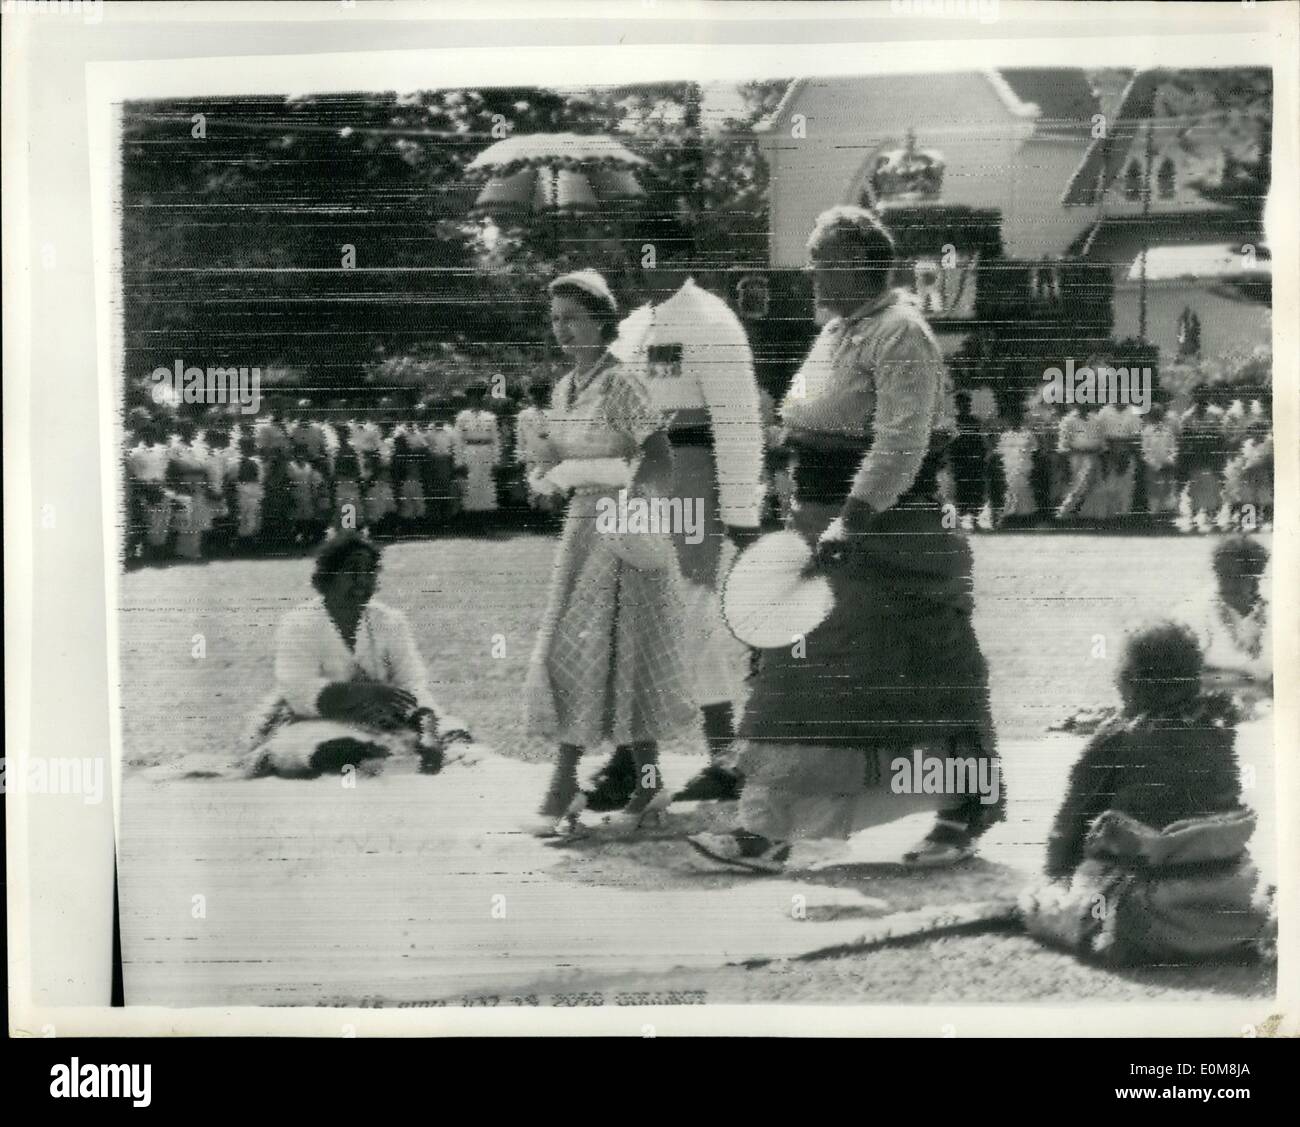 12. Dezember 1953 - Queen Elizabeth kommt In Tonga: Queen Elizabeth weiter, dass ihre königliche Reise von Suva, Fidschi, Tonga angekommen war es ein Tag jubeln, tanzen und schlemmen. Tonga tolle Begrüßung begann mit zwei der weltweit amtierende Königin teilen einen Witz, der an der Krönung Bay begann. Wie die Königin und die hoch aufragenden Königin Salote von der Fastooned fuhren Kai eine Wolke '' Token'' Dusche, eine sanfte Erinnerung an Krönungstag herabgesandt. Foto zeigt The Queen, bedeckt von einem Sonnenschirm wegen der Regendusche, die ihre Blätter begrüßt den Kai mit Königin Salote bei ihrer Ankunft in Tonga. Stockfoto